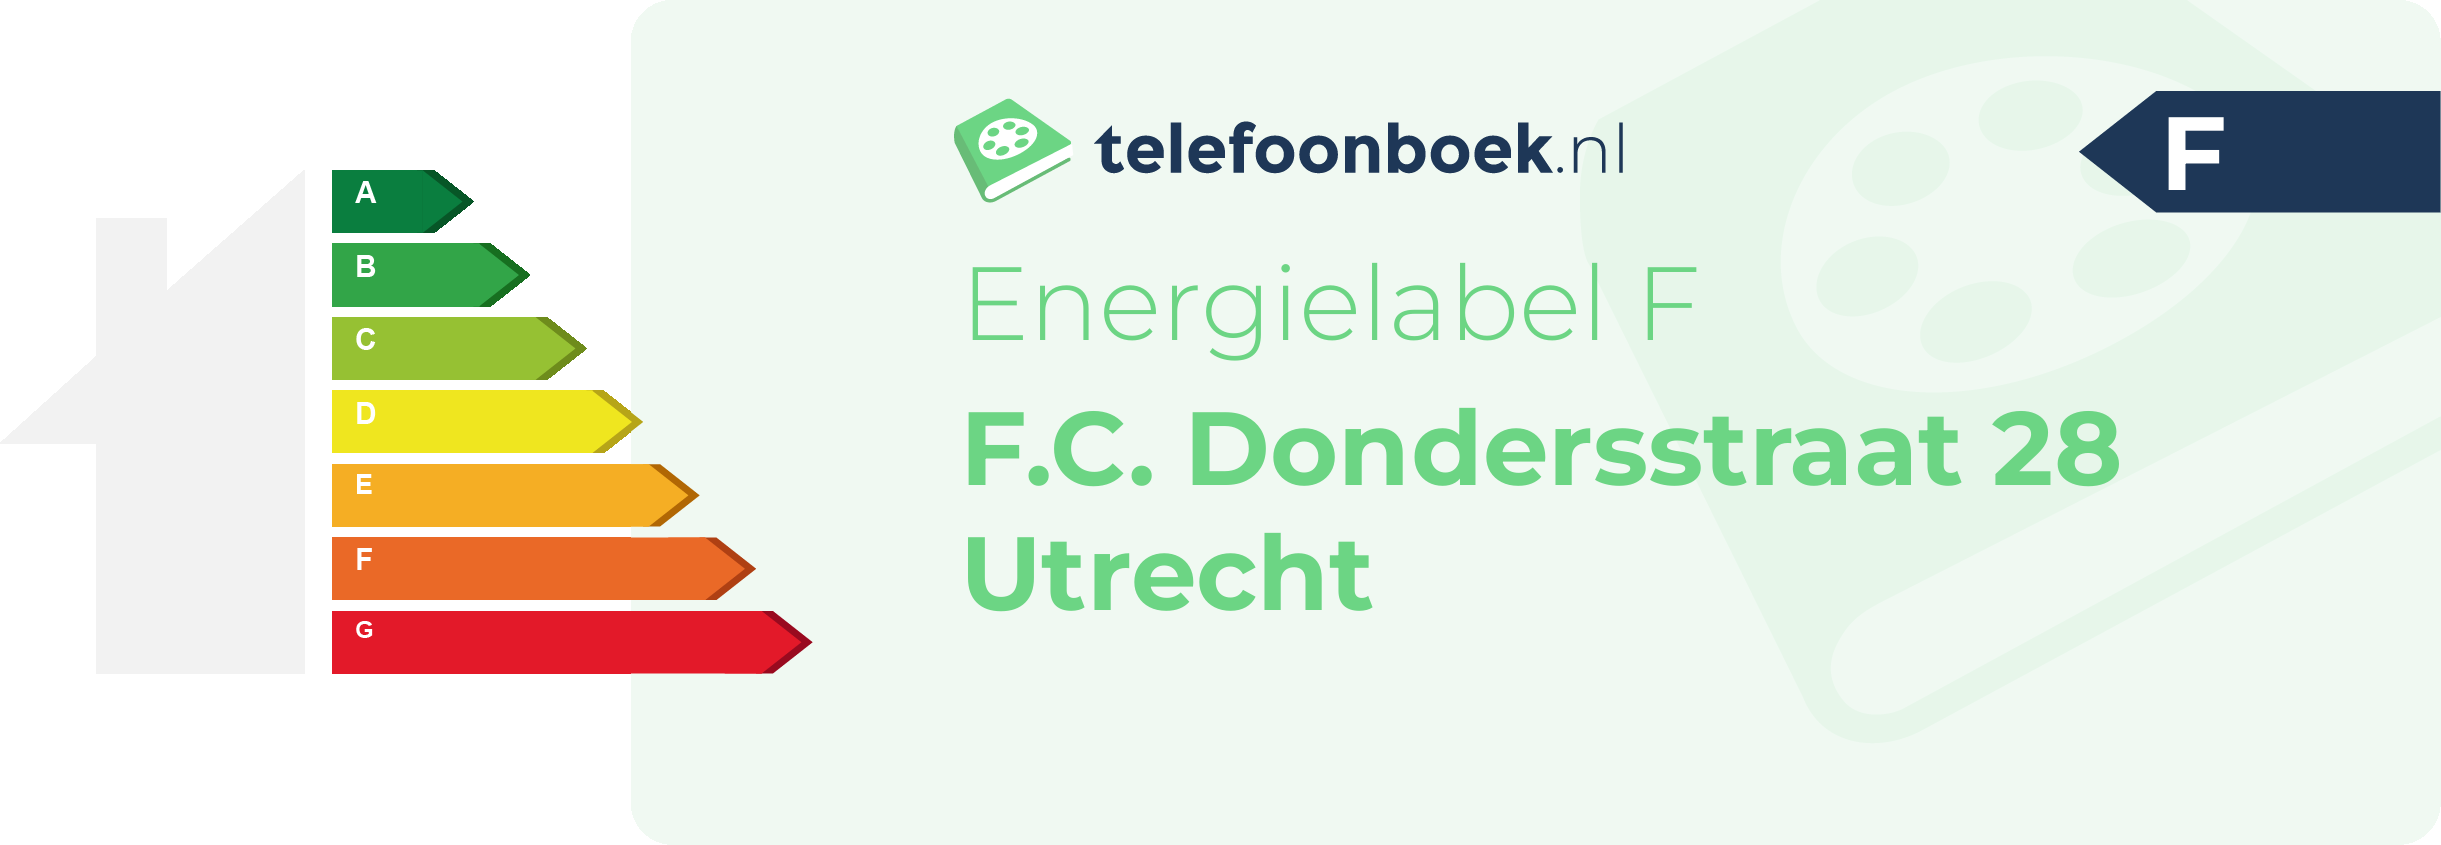 Energielabel F.C. Dondersstraat 28 Utrecht